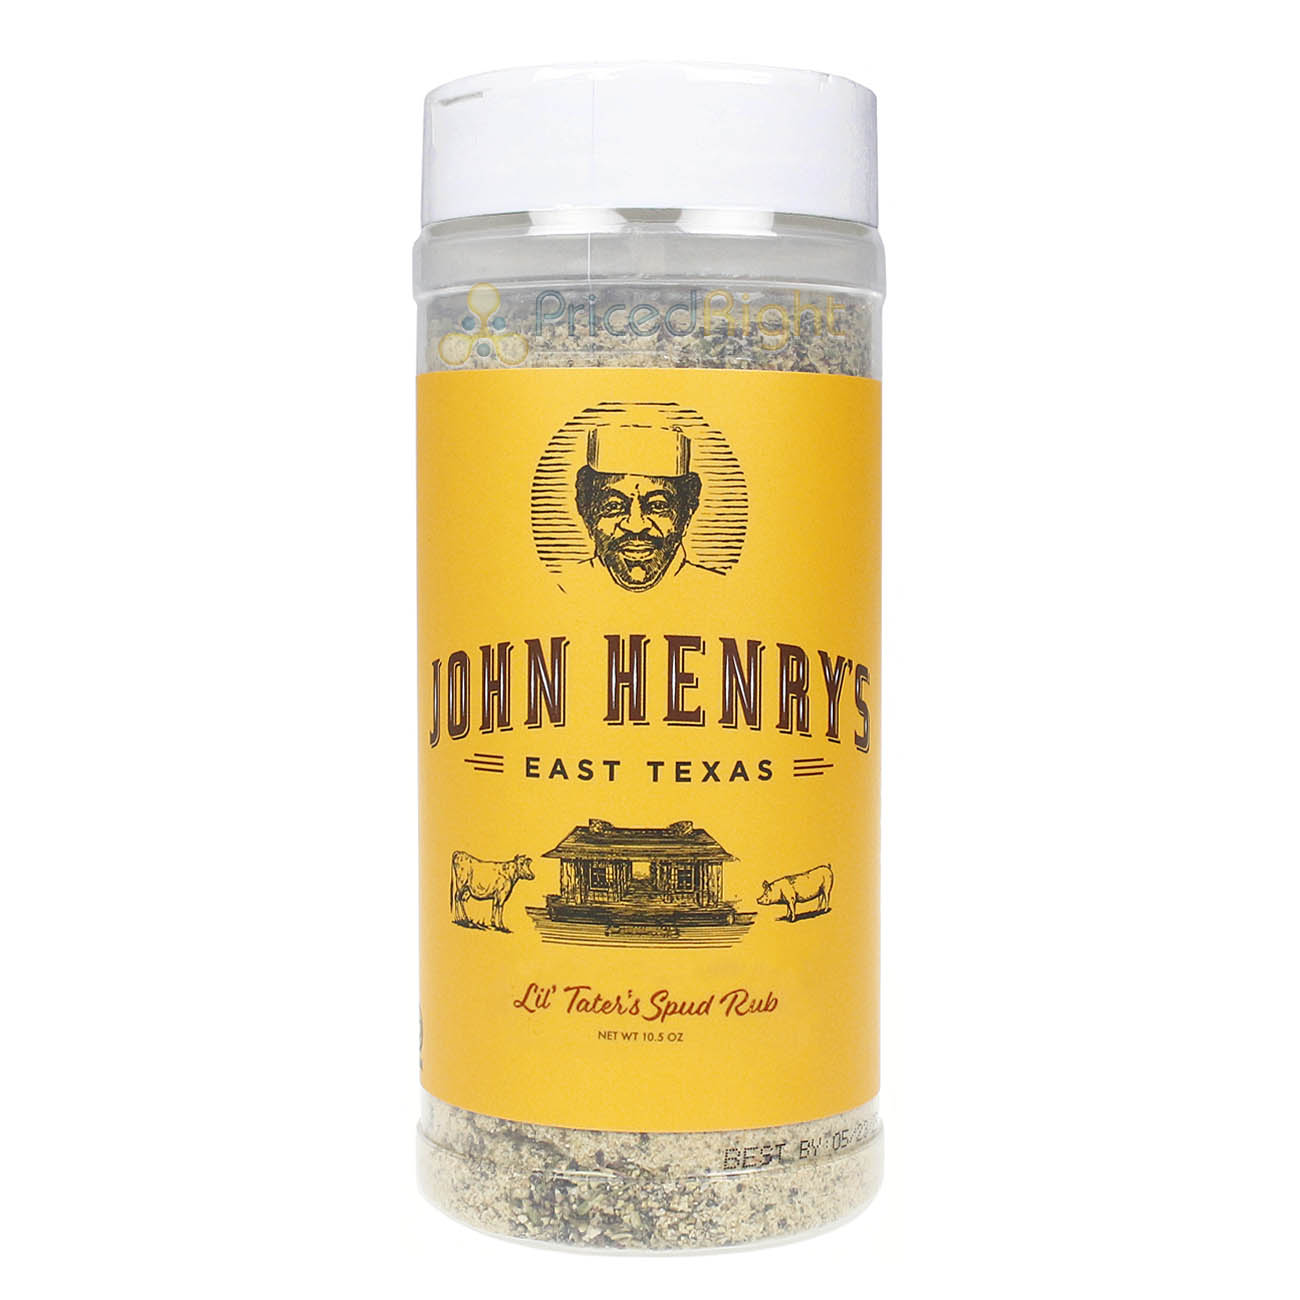 John Henry's Lil Tater's Spud Rub Seasoning Herbs Garlic Pepper 10.5 Oz Bottle